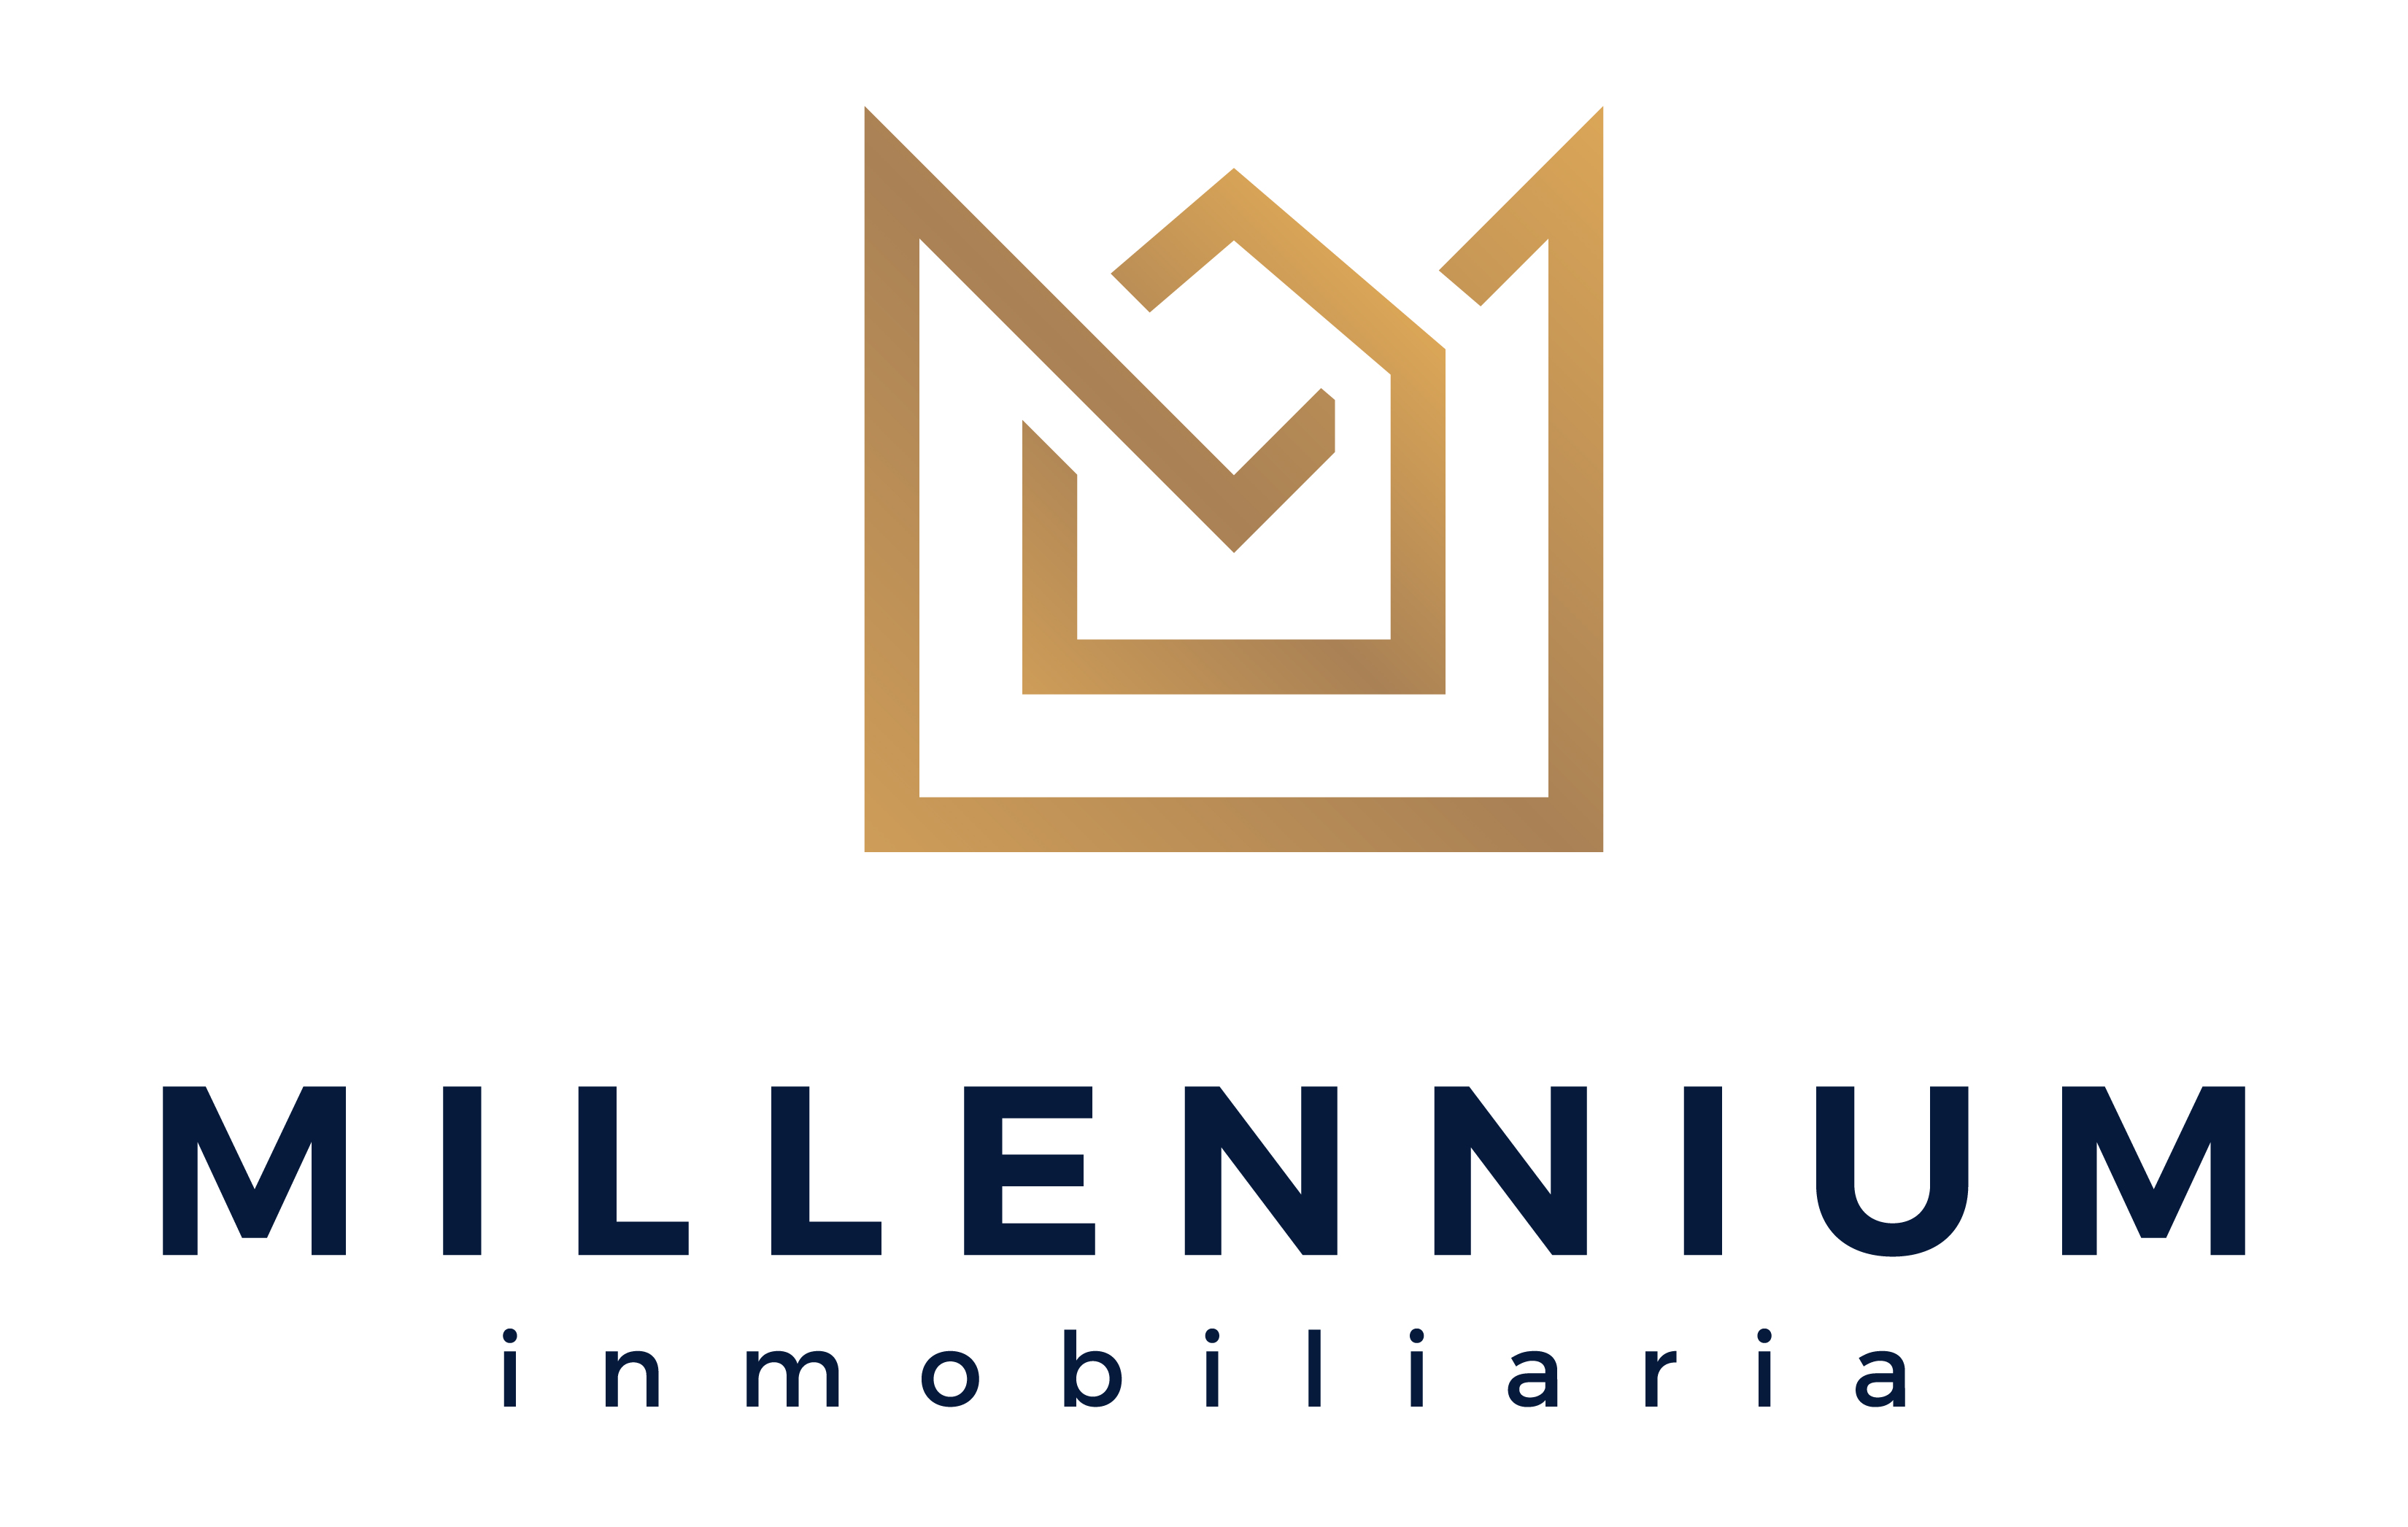 Inmobiliaria Millennium